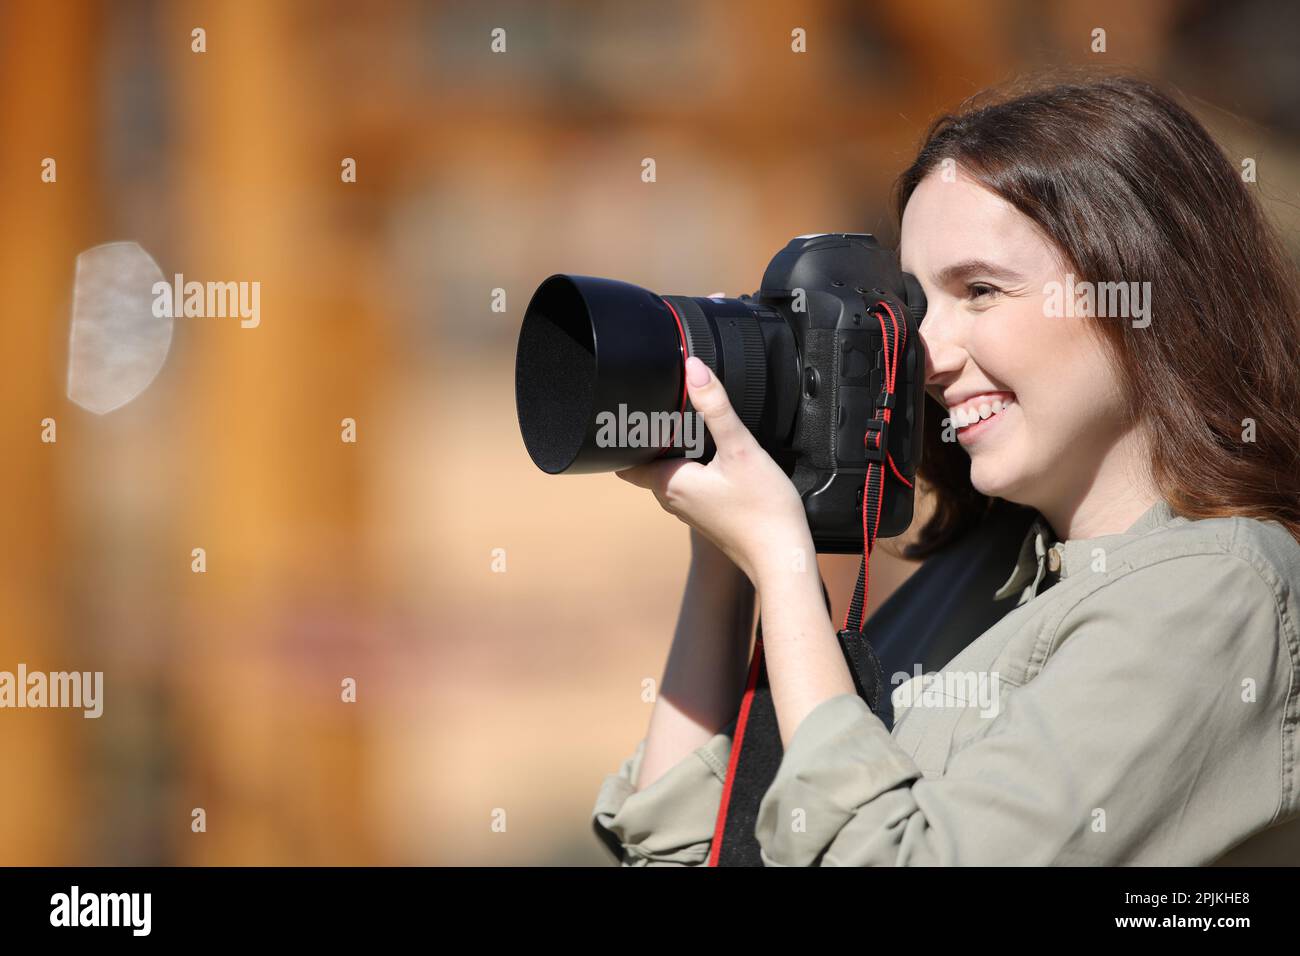 Portrait en vue latérale d'un photographe heureux prenant des photos en extérieur Banque D'Images